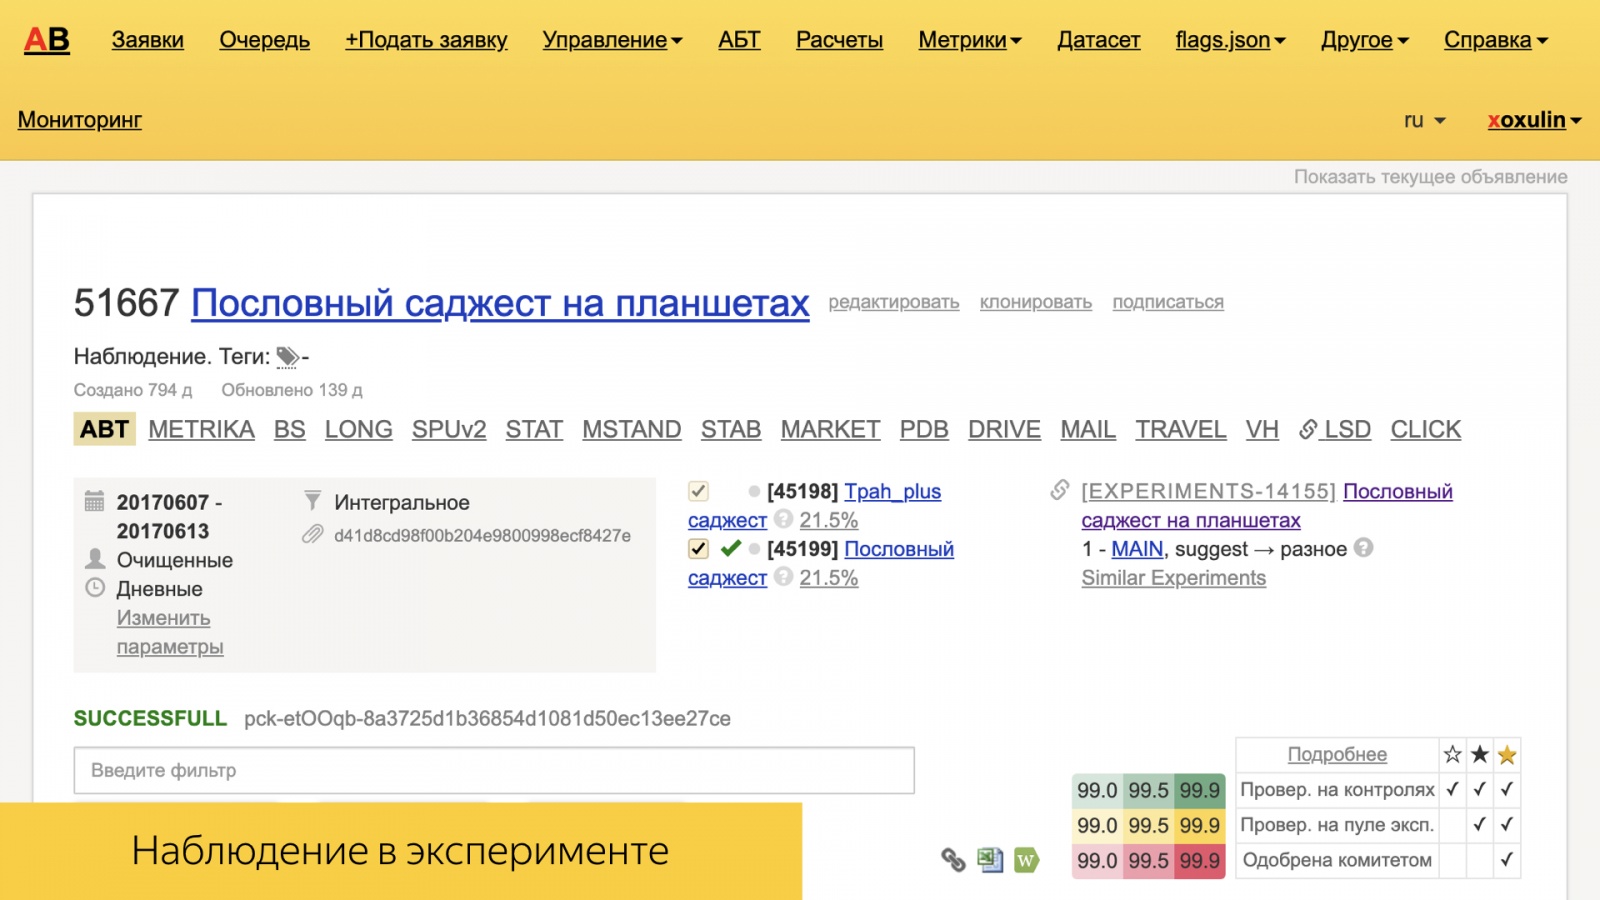 Инфраструктура А-Б-экспериментов в большом Поиске. Доклад Яндекса - 21